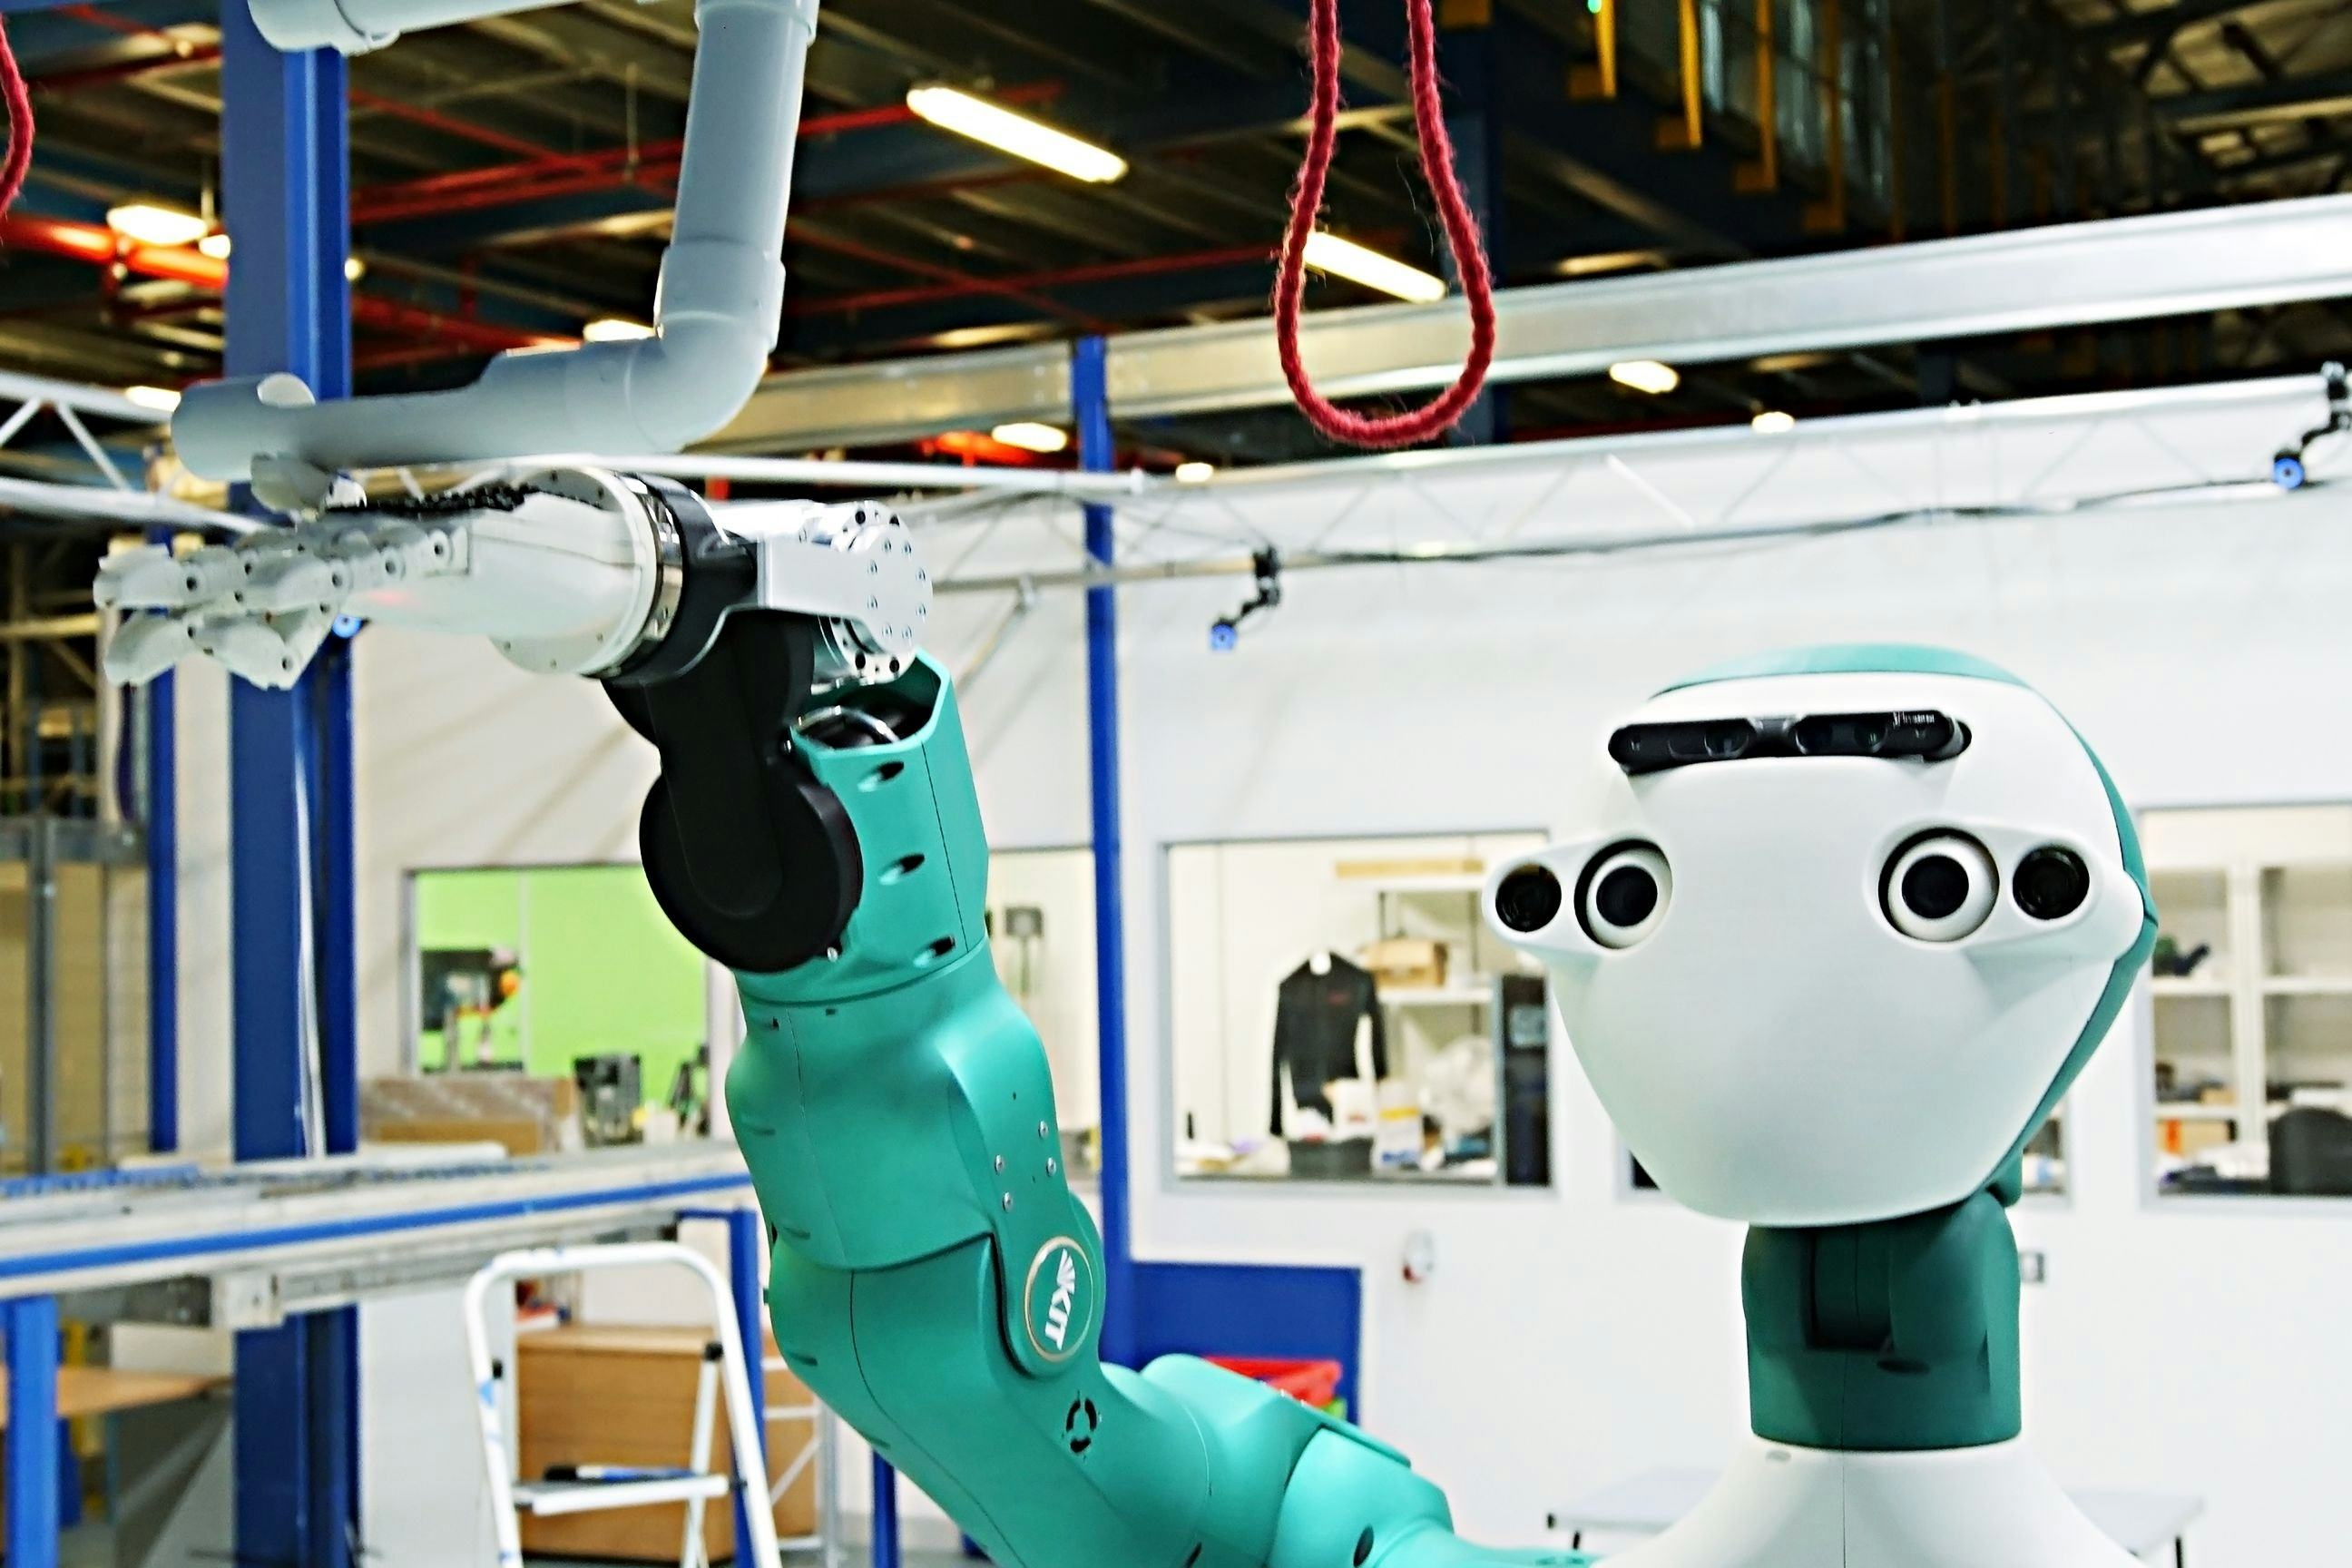 Ocado-robot assisteert bij onderhoud magazijnsystemen (Video)